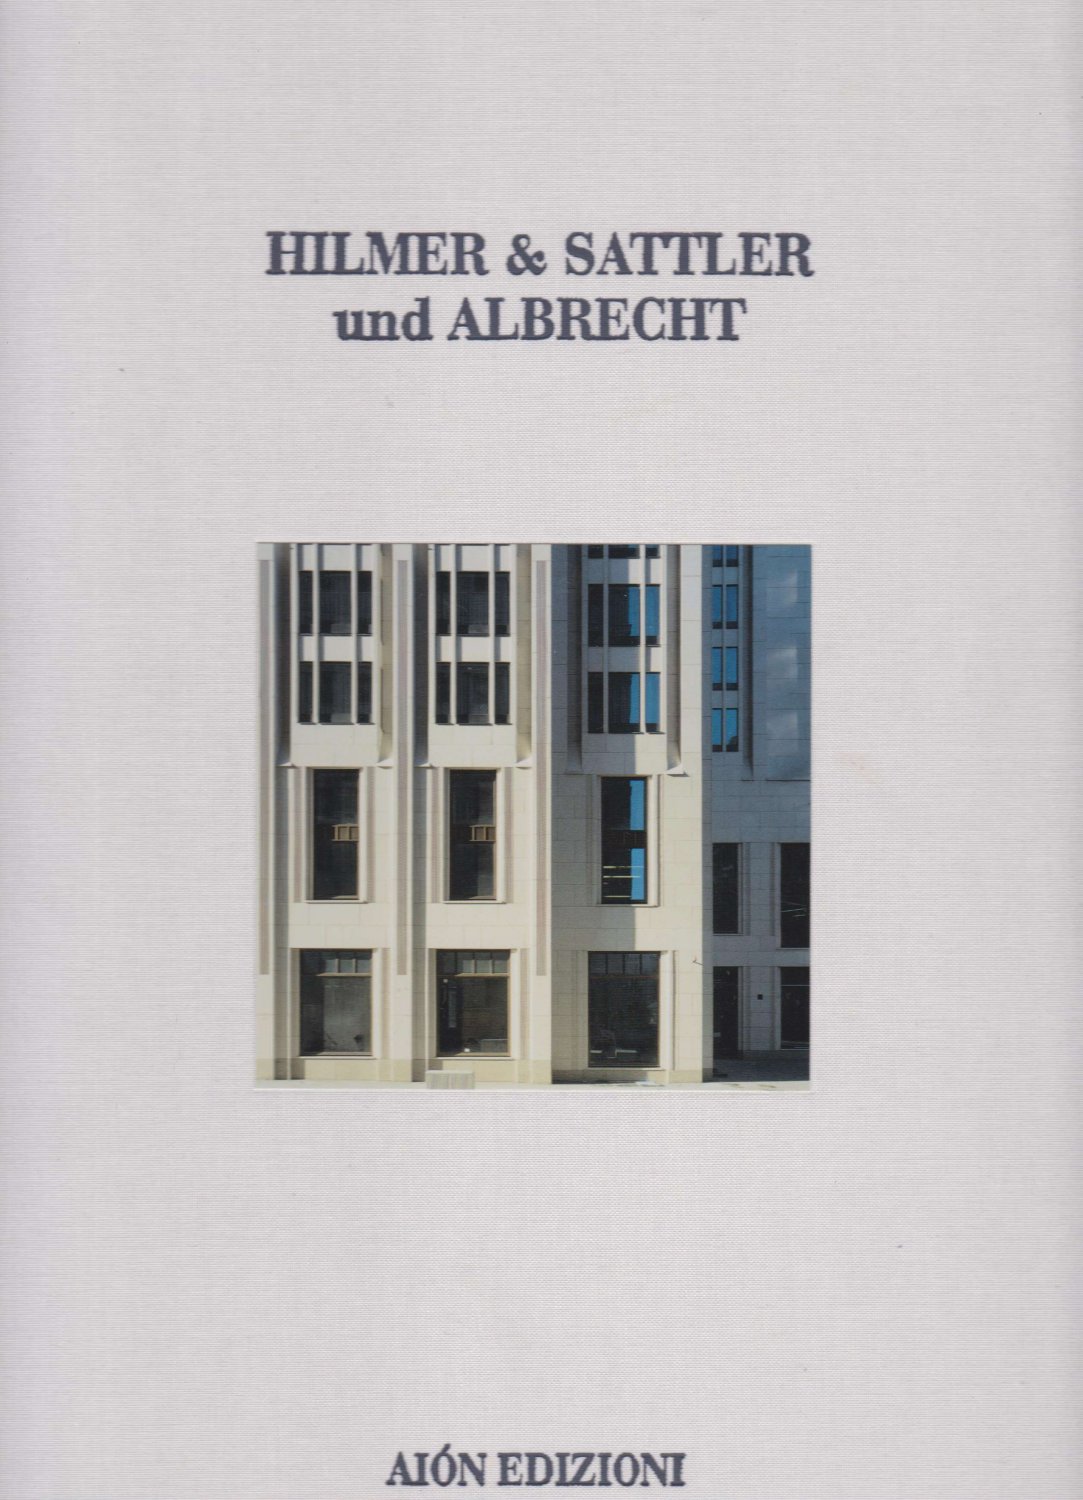 Hilmer & Sattler und Albrecht (Editors):  Hilmer & Sattler und Albrecht 1968-2012. Eleganz in diesem ihrem Widerstreit. 